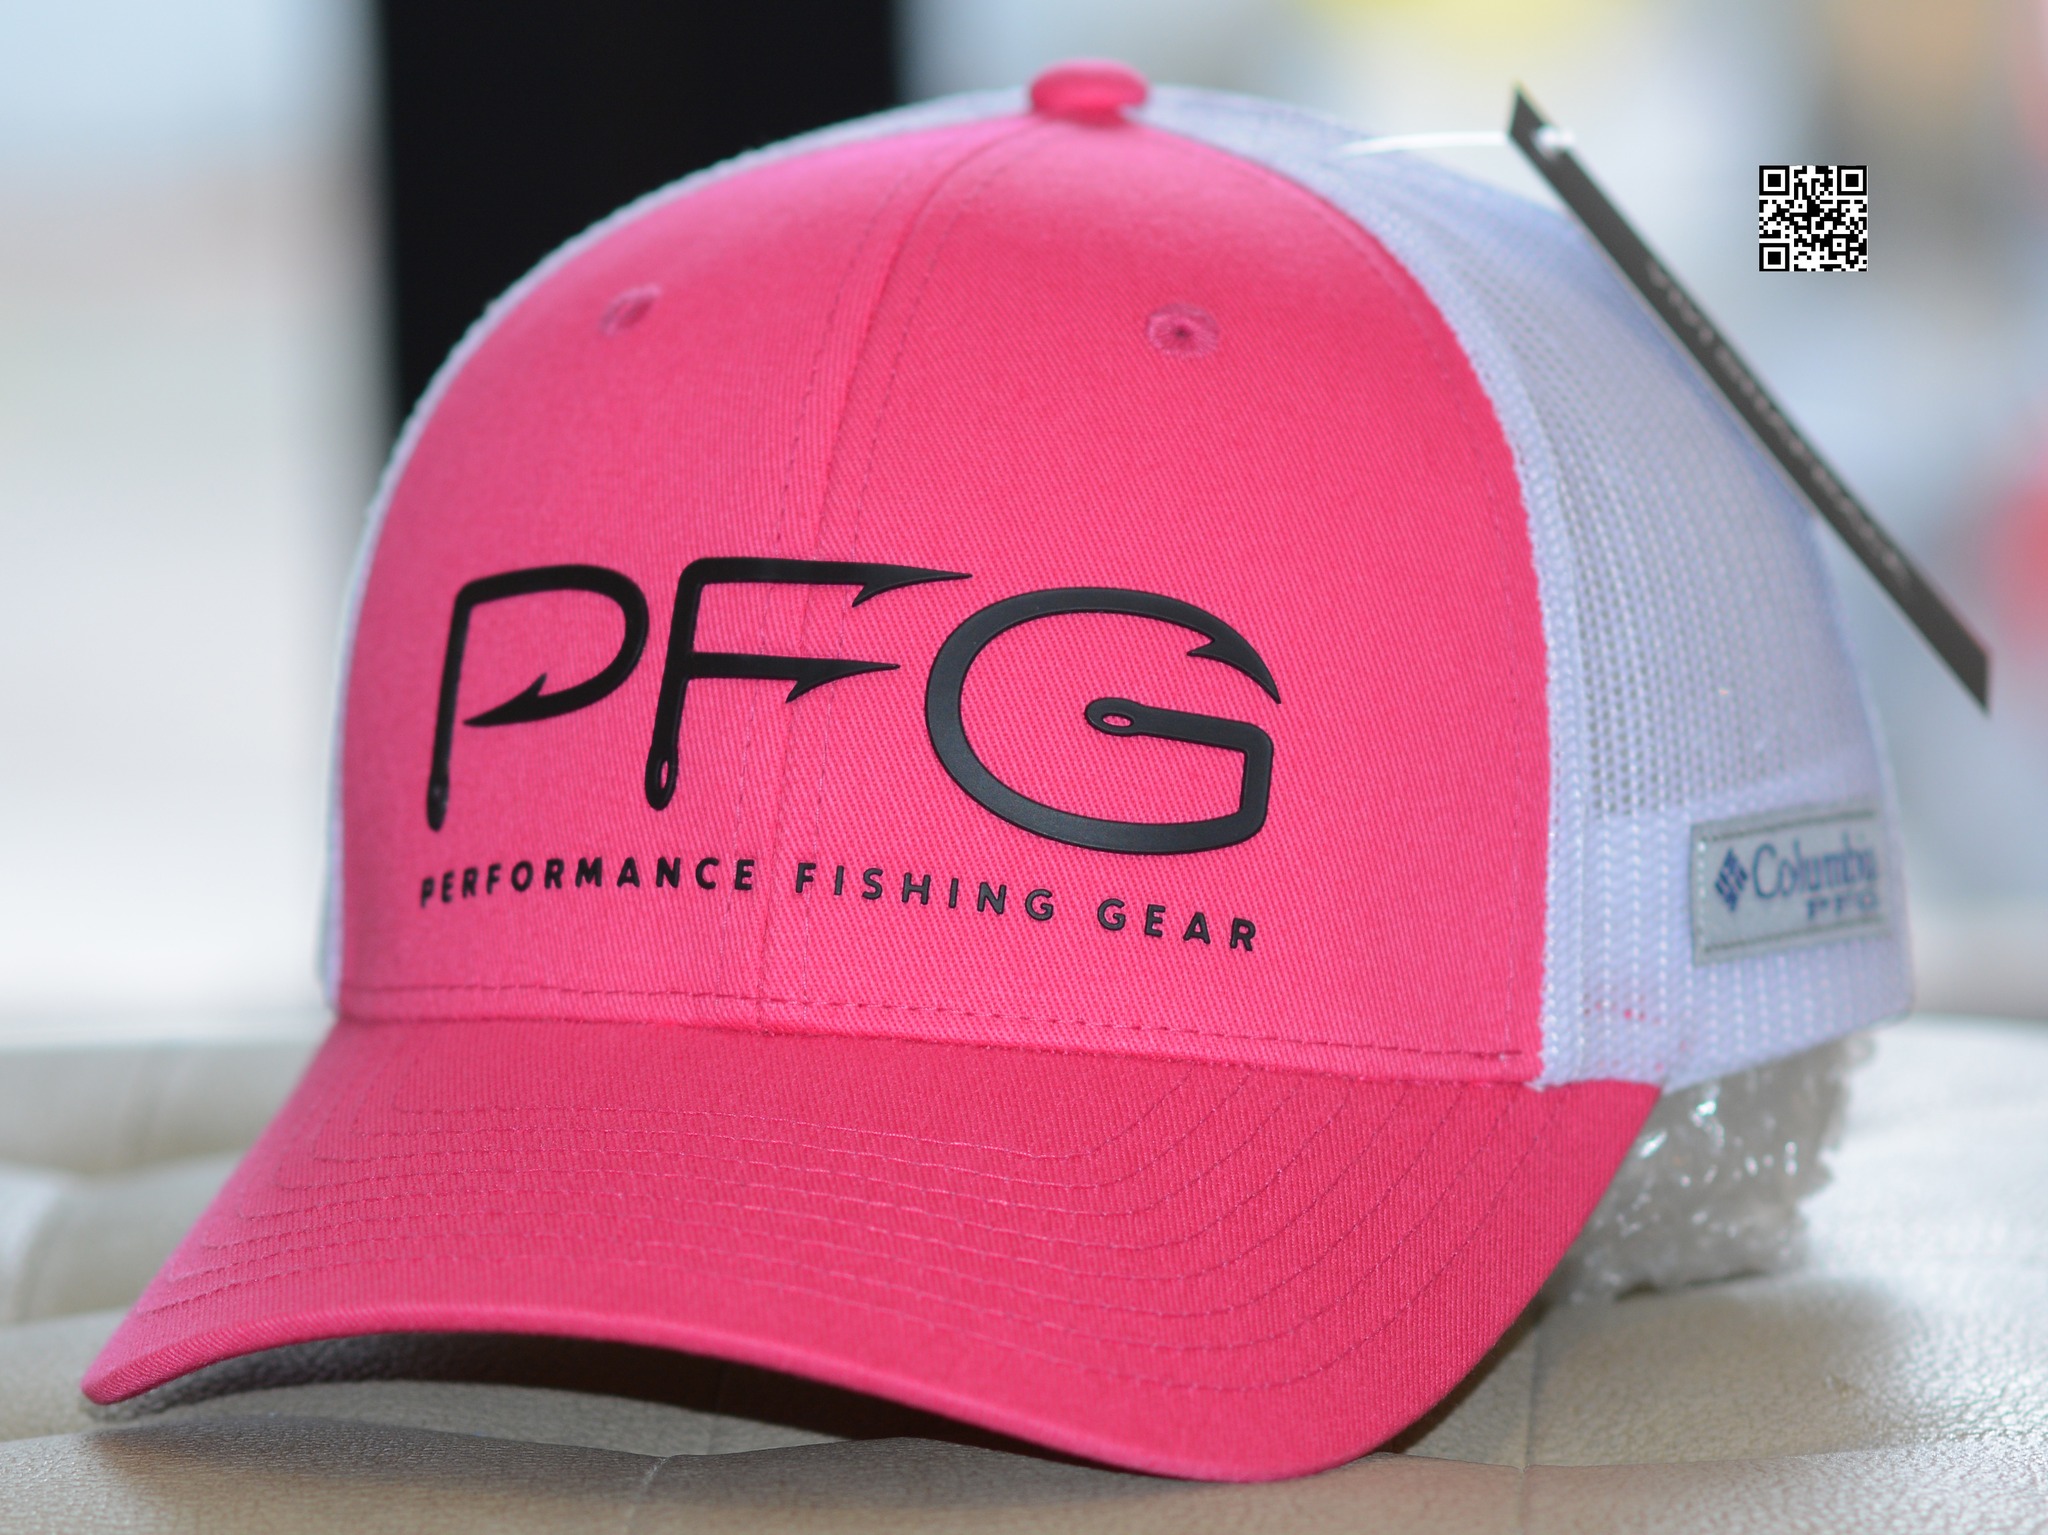 Nón lưỡi trai lưới columbia cap nam nữ thời trang màu xanh navy hồng xám  ghi logo PFG,mũ thể thao Columbia PFG Hooks trucker fitted cap {Hình thật}